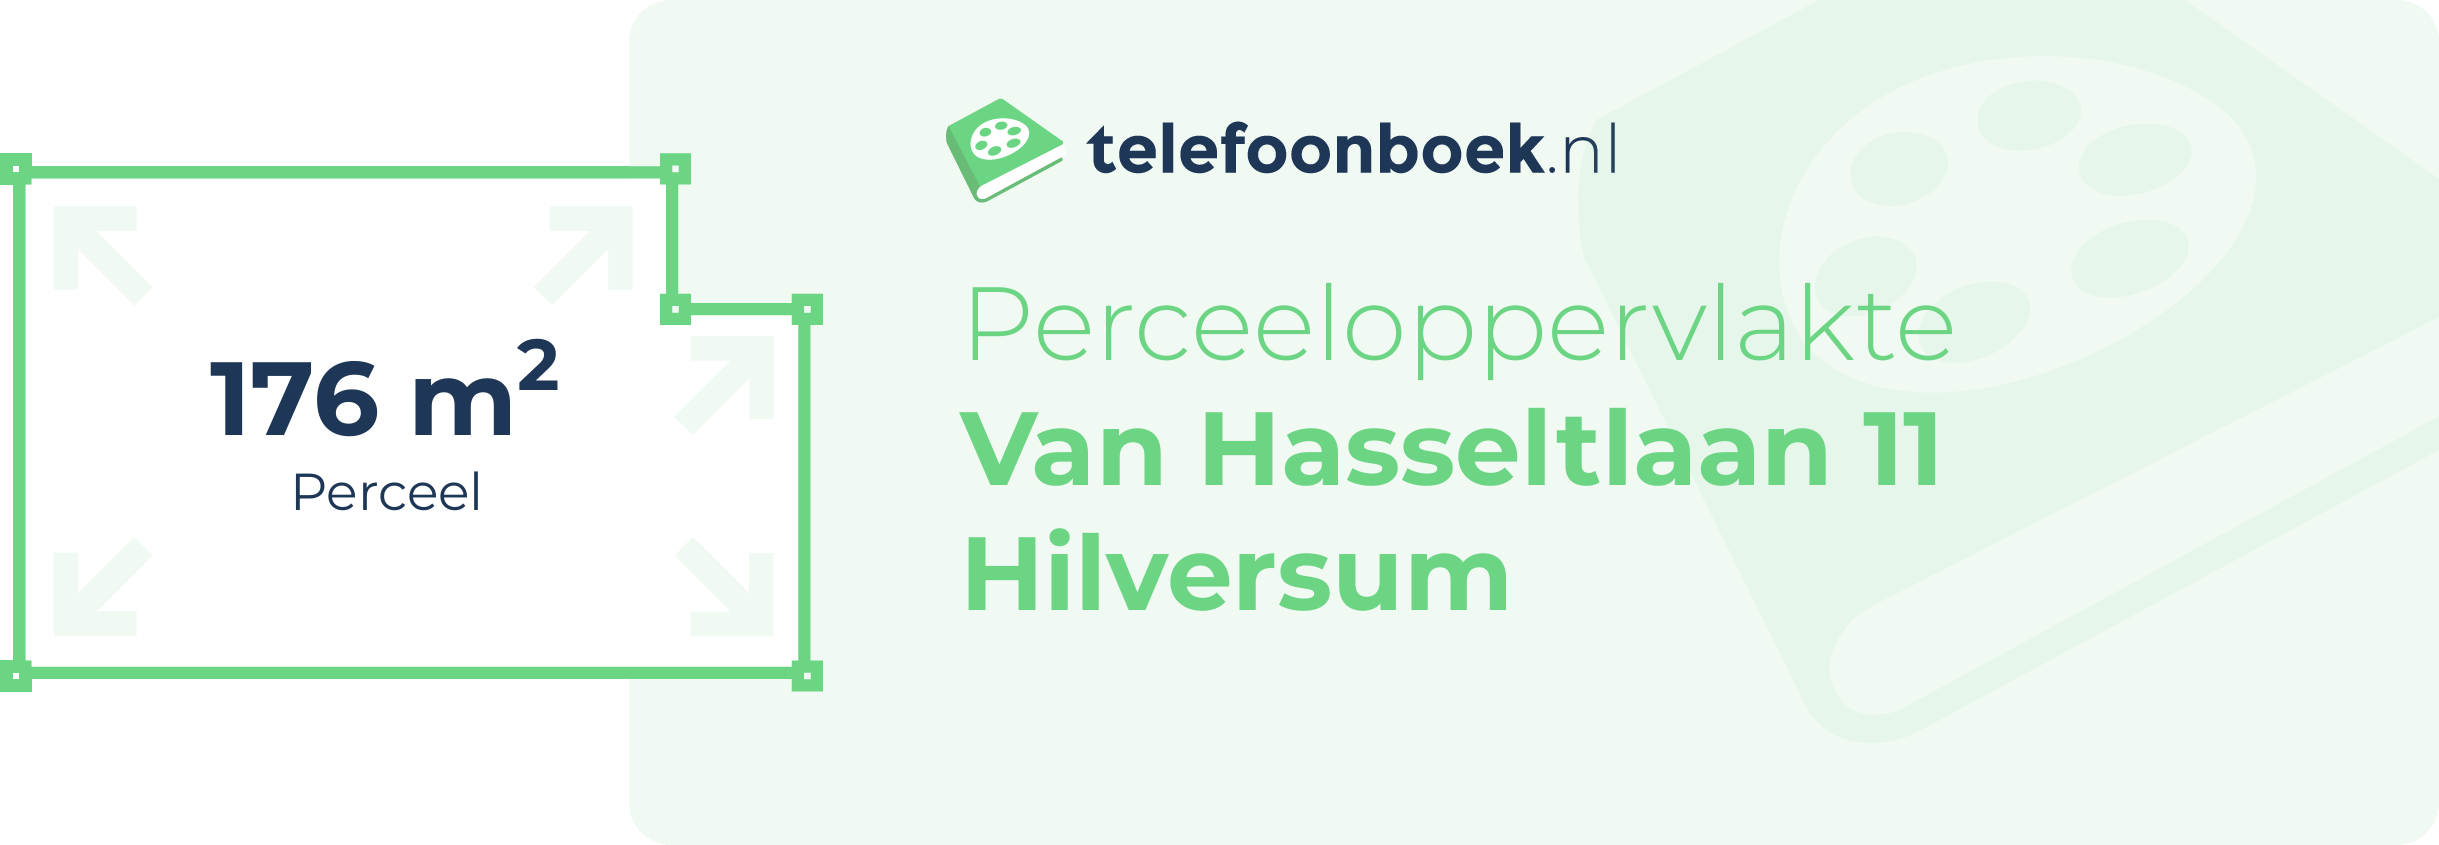 Perceeloppervlakte Van Hasseltlaan 11 Hilversum